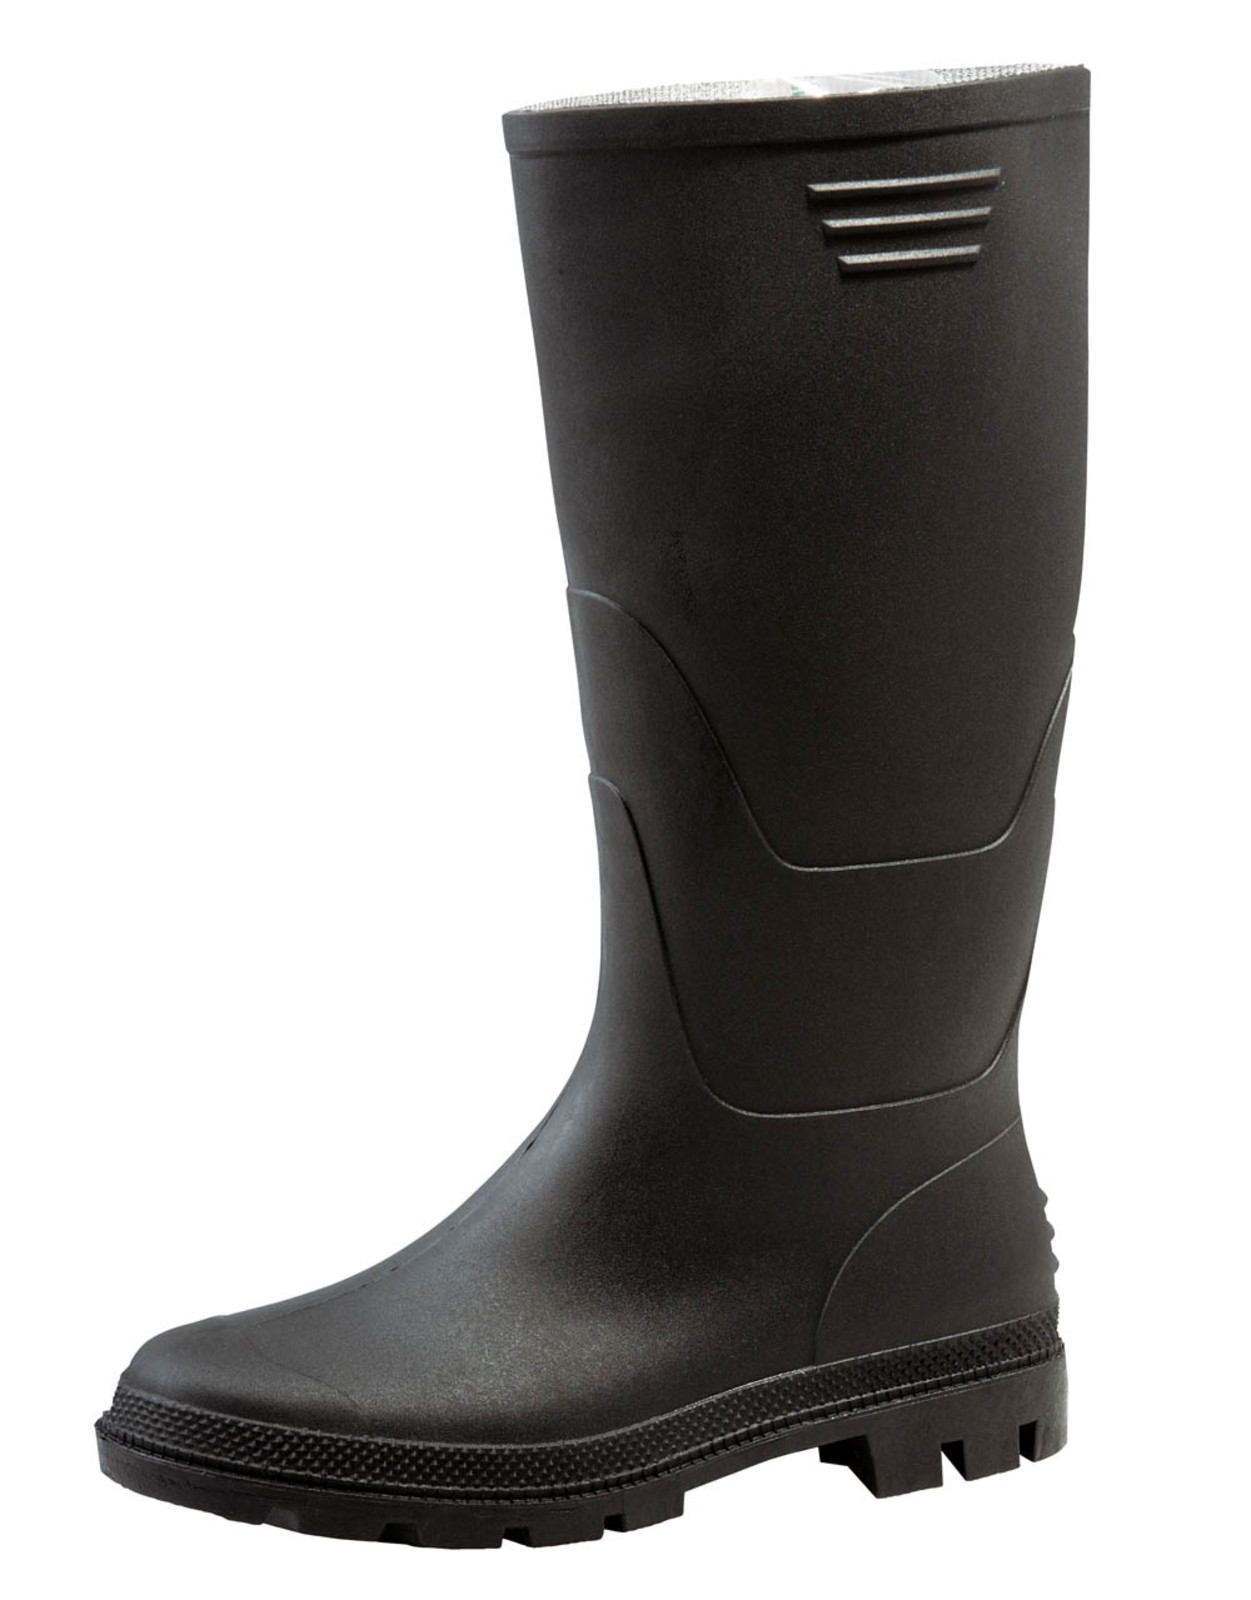 Gumáky Boots Ginocchio PVC - veľkosť: 37, farba: čierna